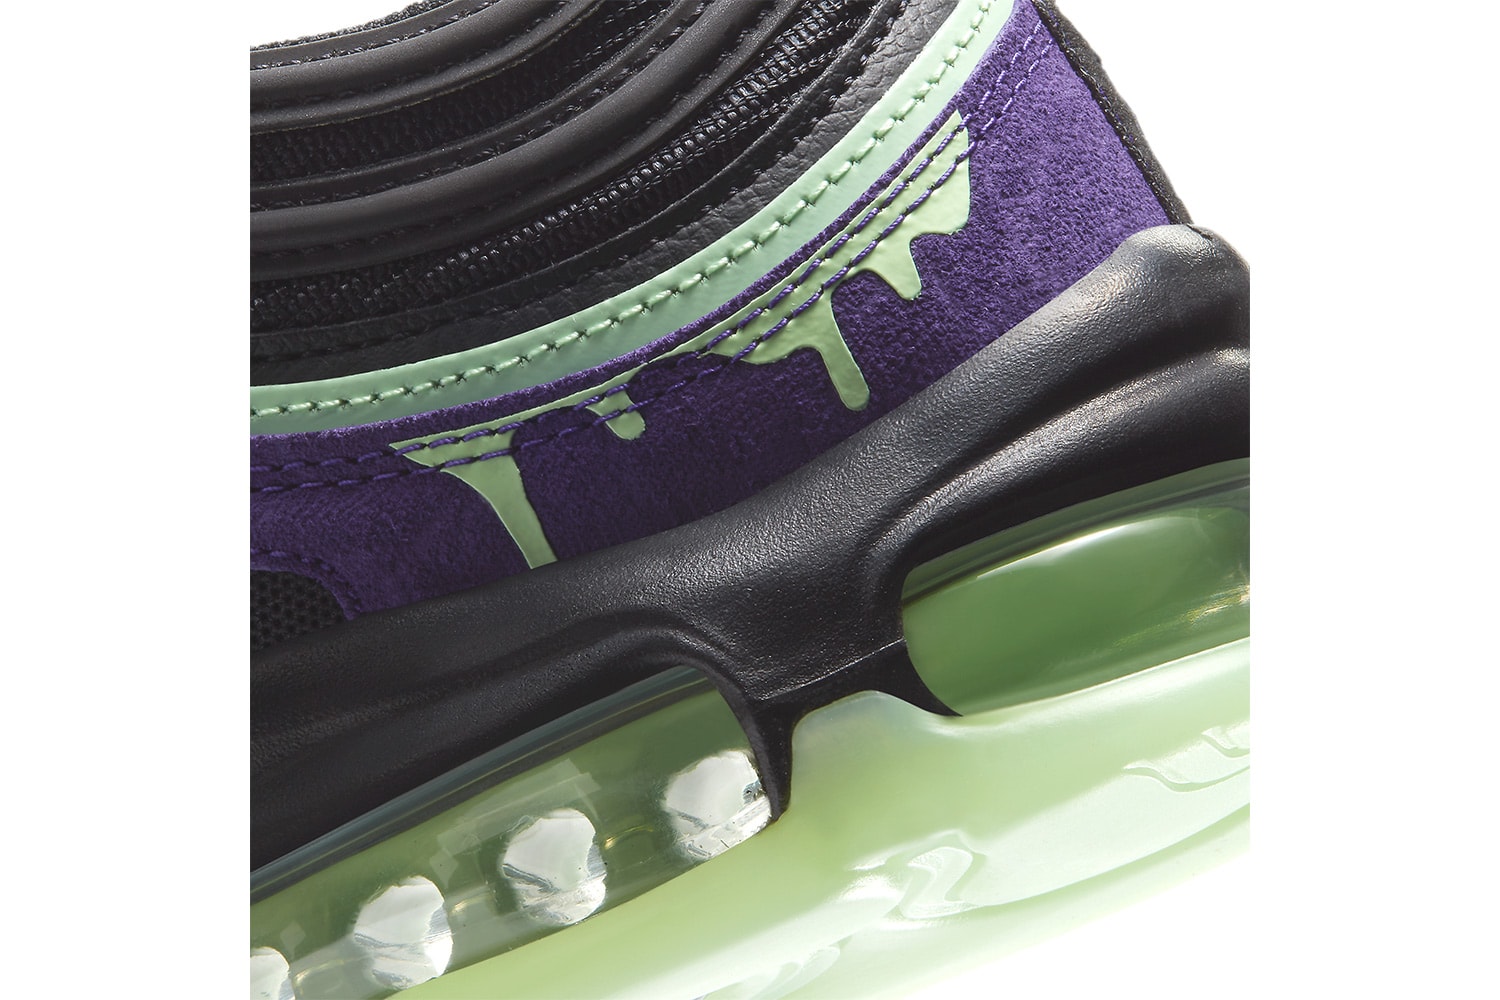 Nike Air Max 97 推出全新萬聖節配色「Oozes Slime」